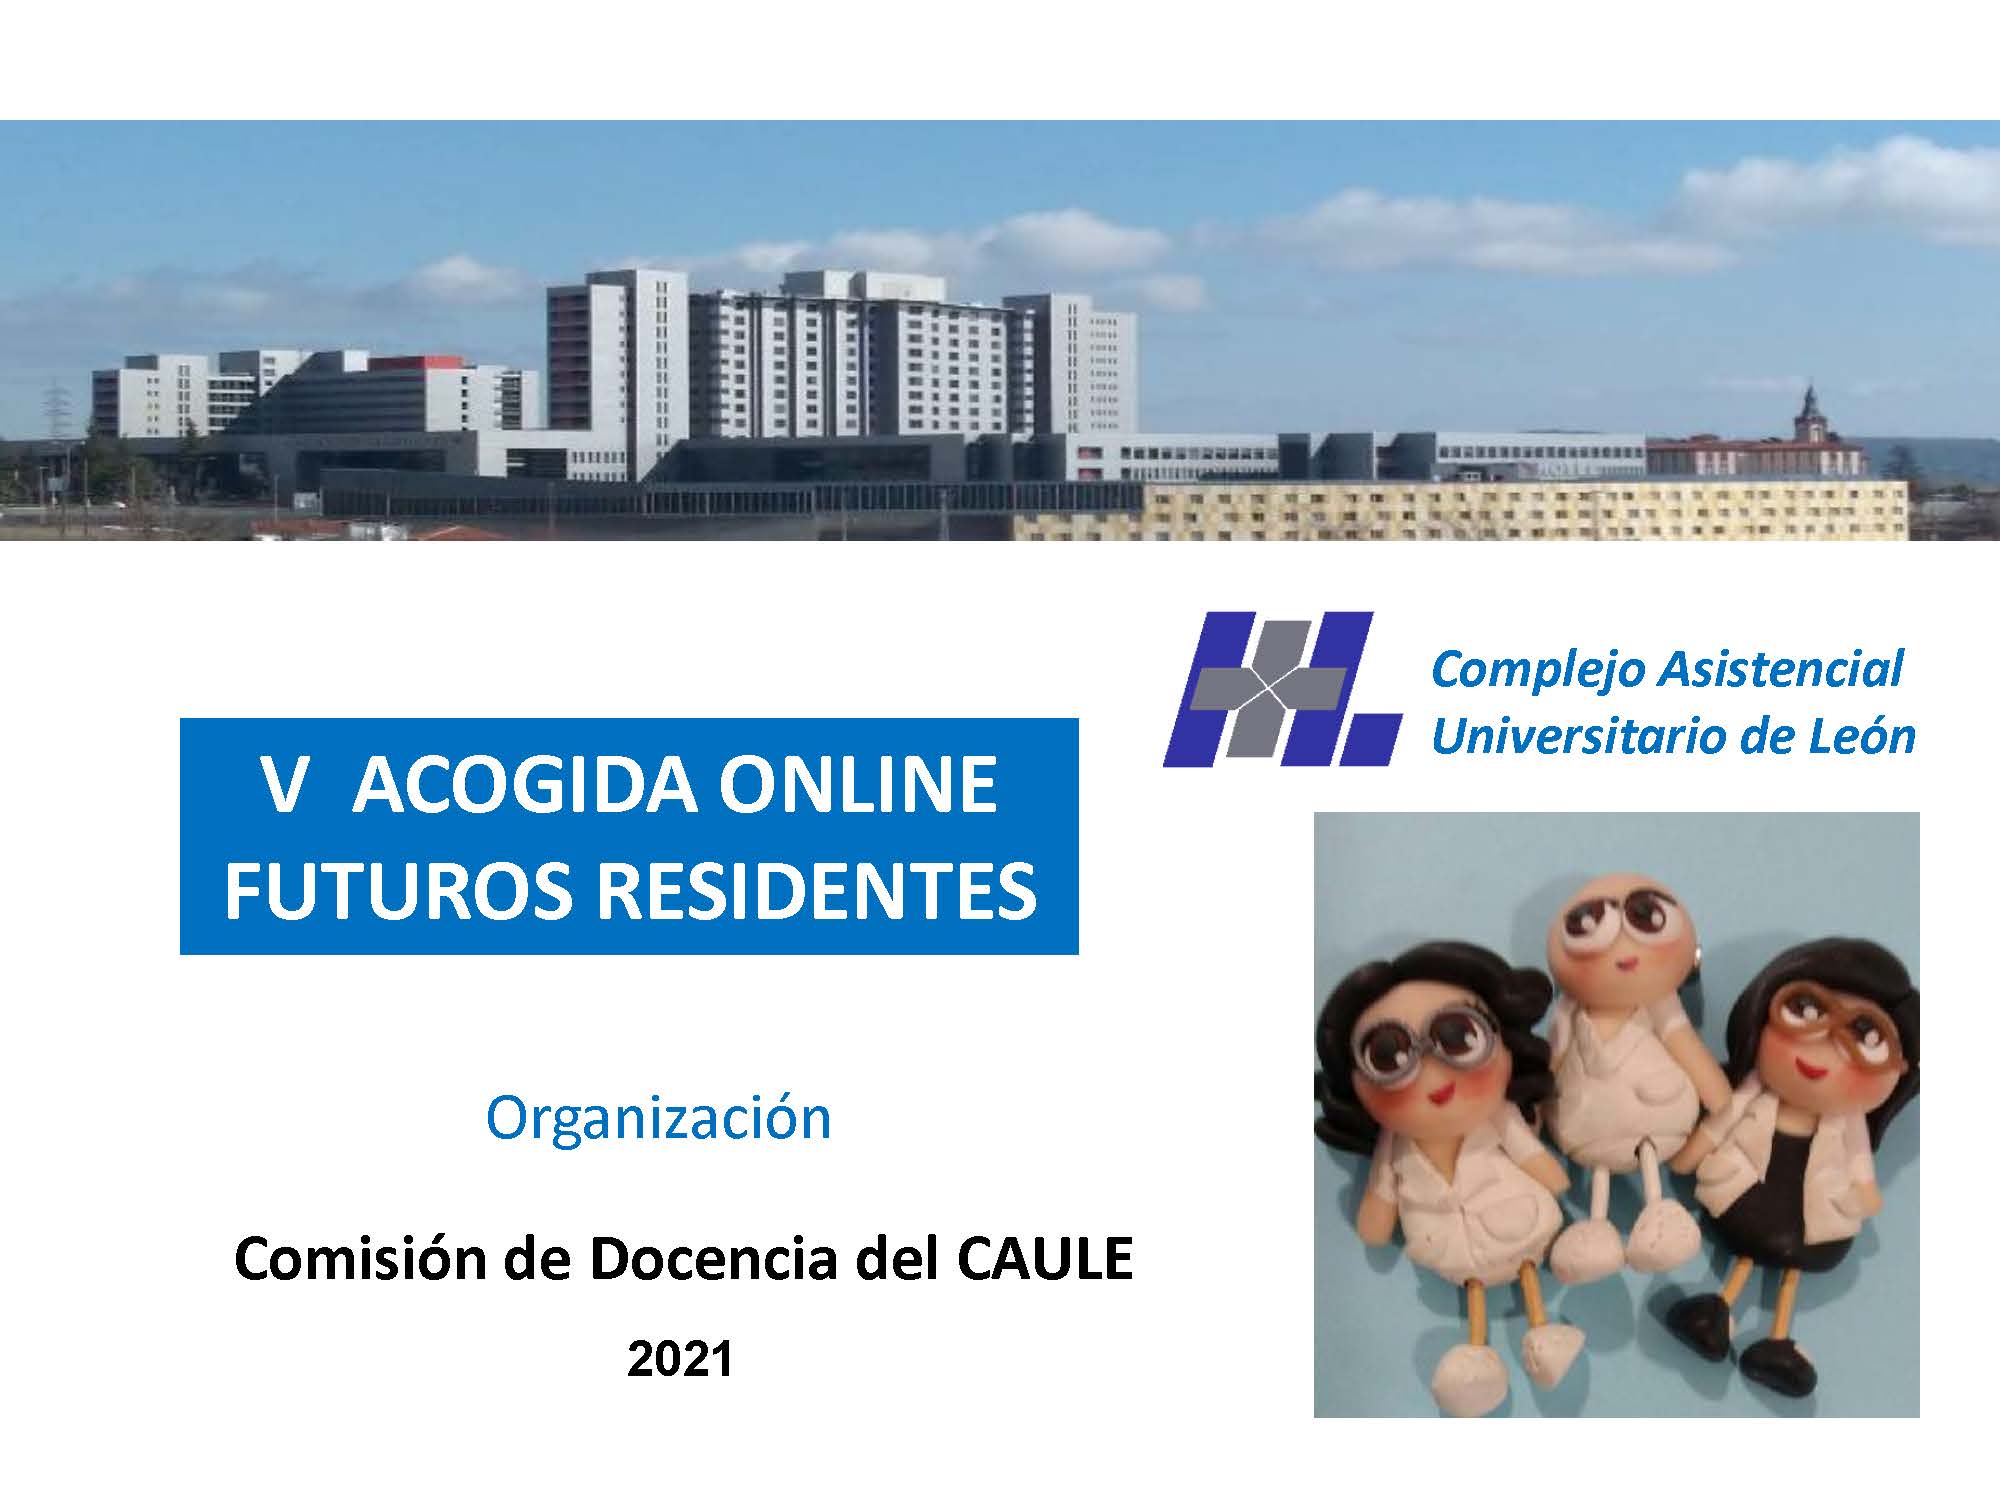 ACOGIDA ONLINE CAULE FUTUROS RESIDENTES 2021_Página_01. Este enlace se abrirá en una ventana nueva